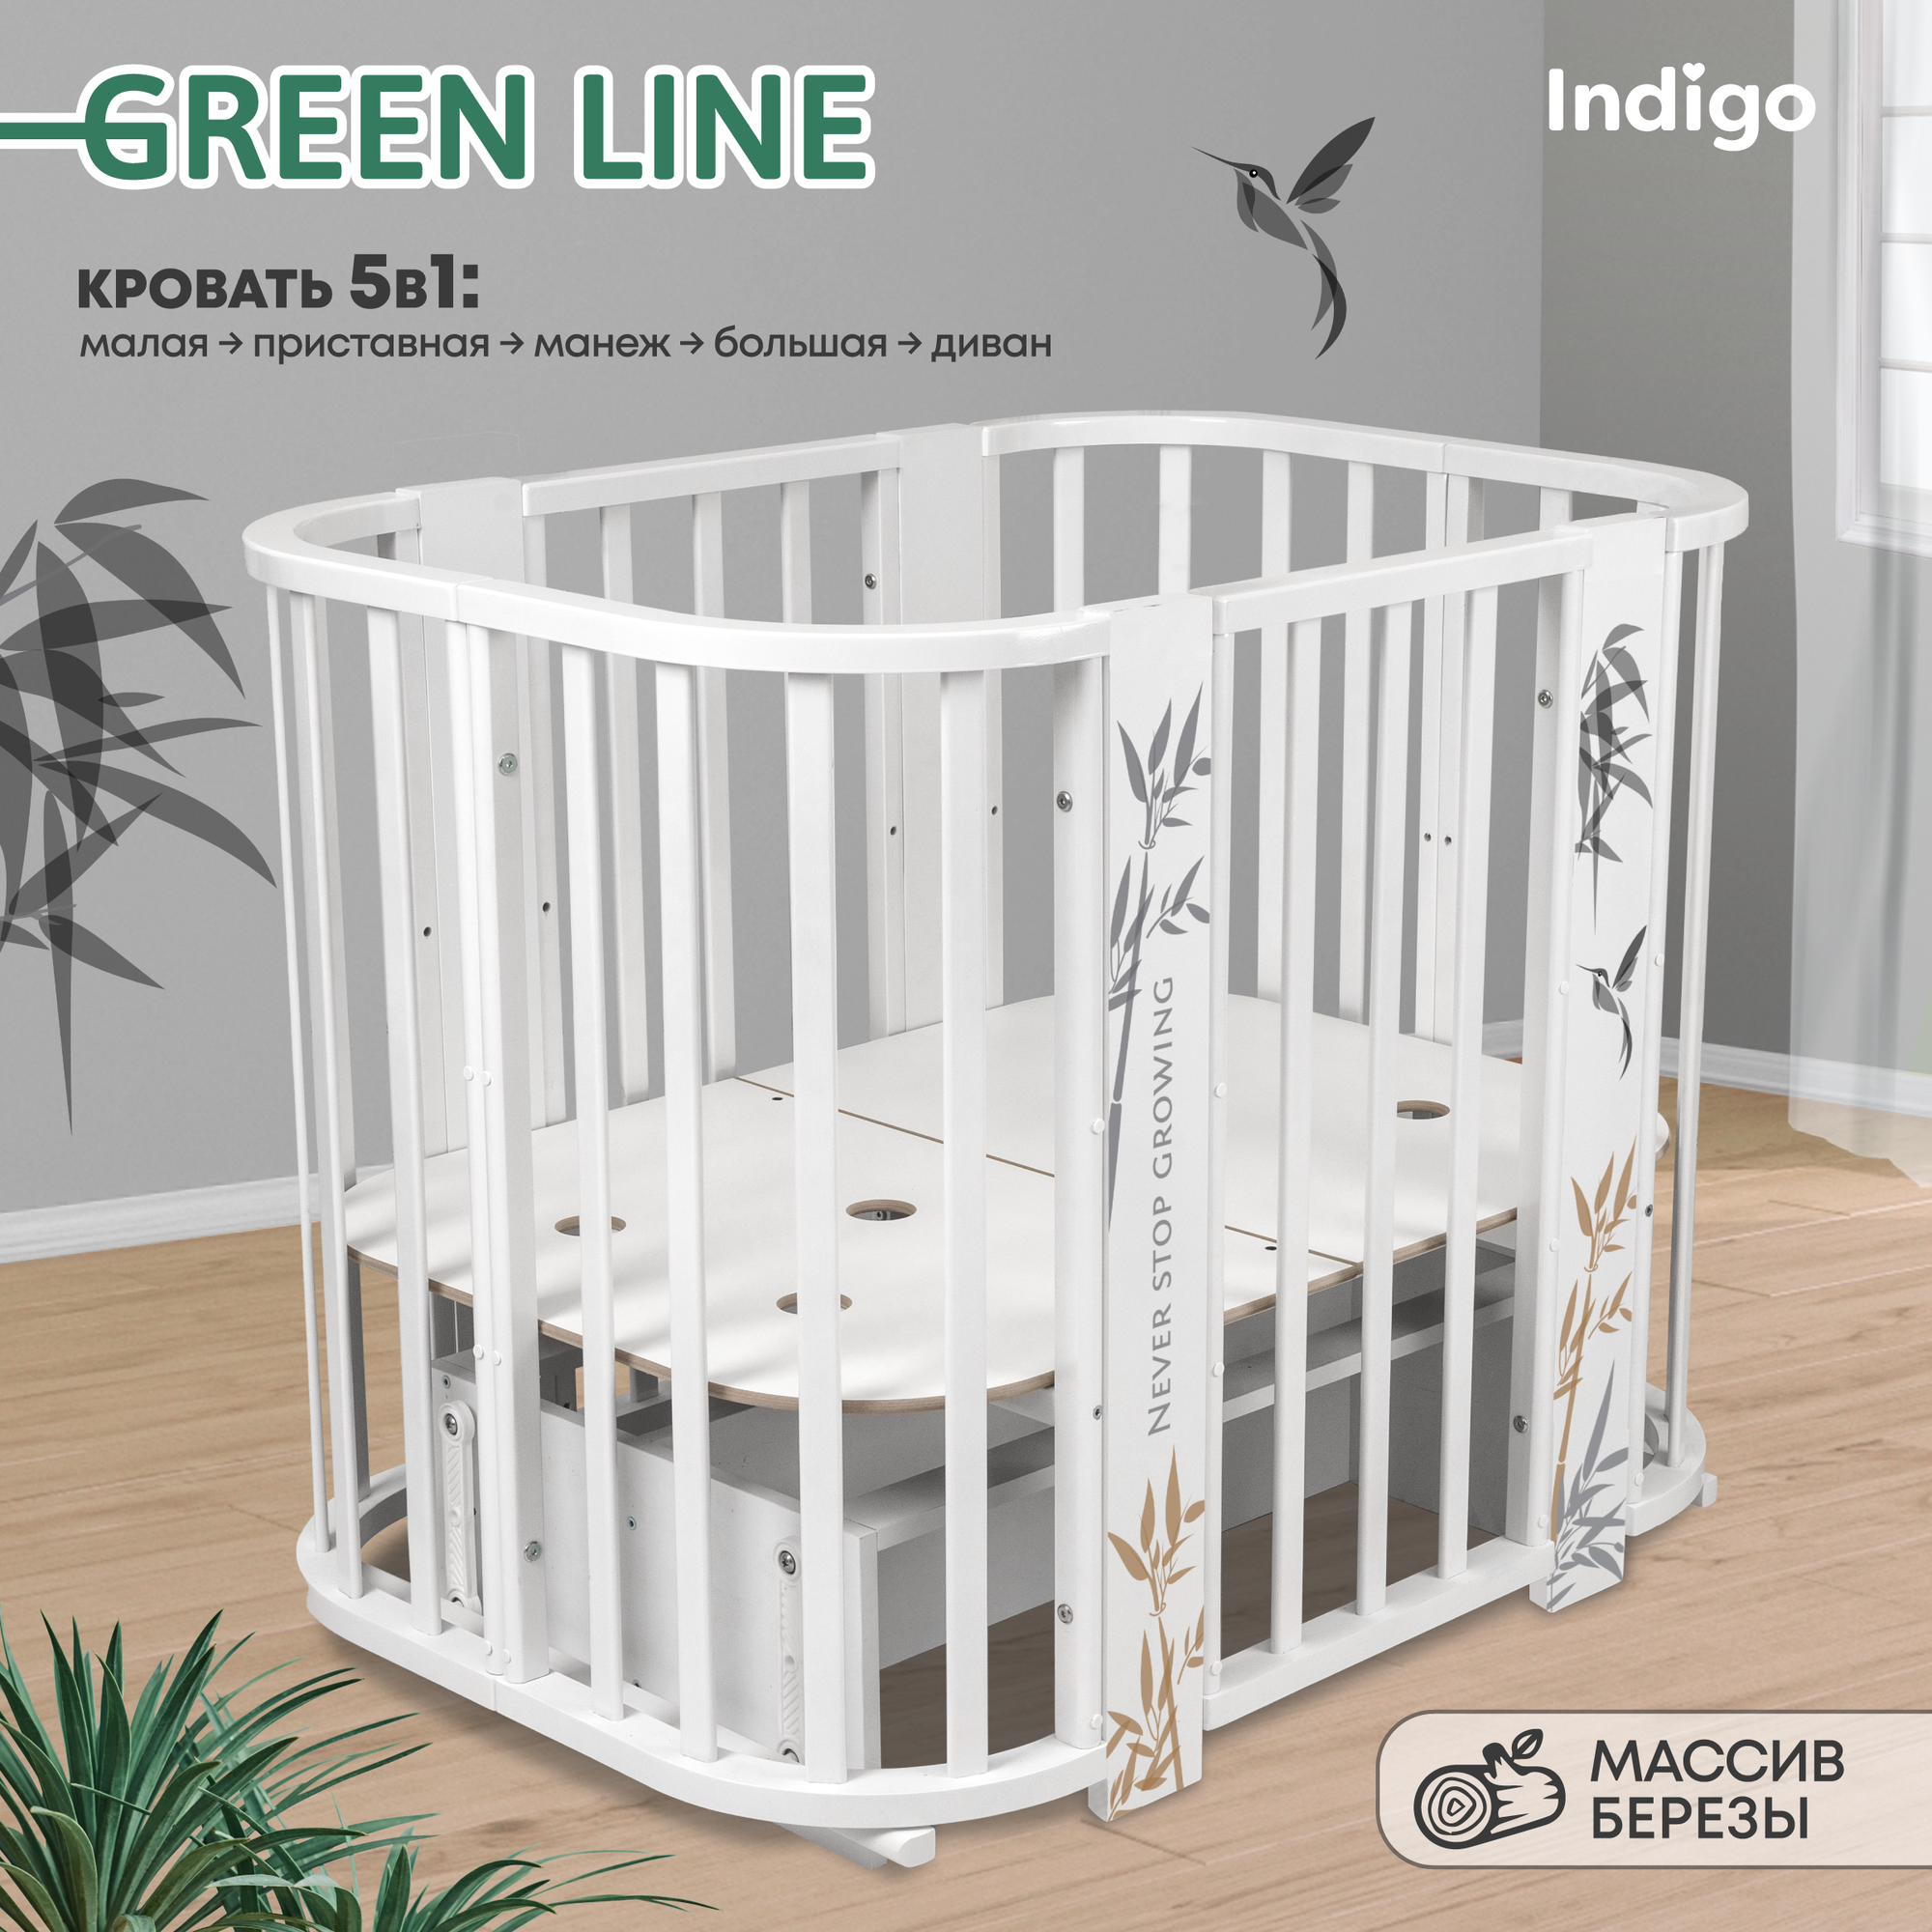 Детская кроватка трансформер Indigo Green Line 5в1 с маятником, бамбук